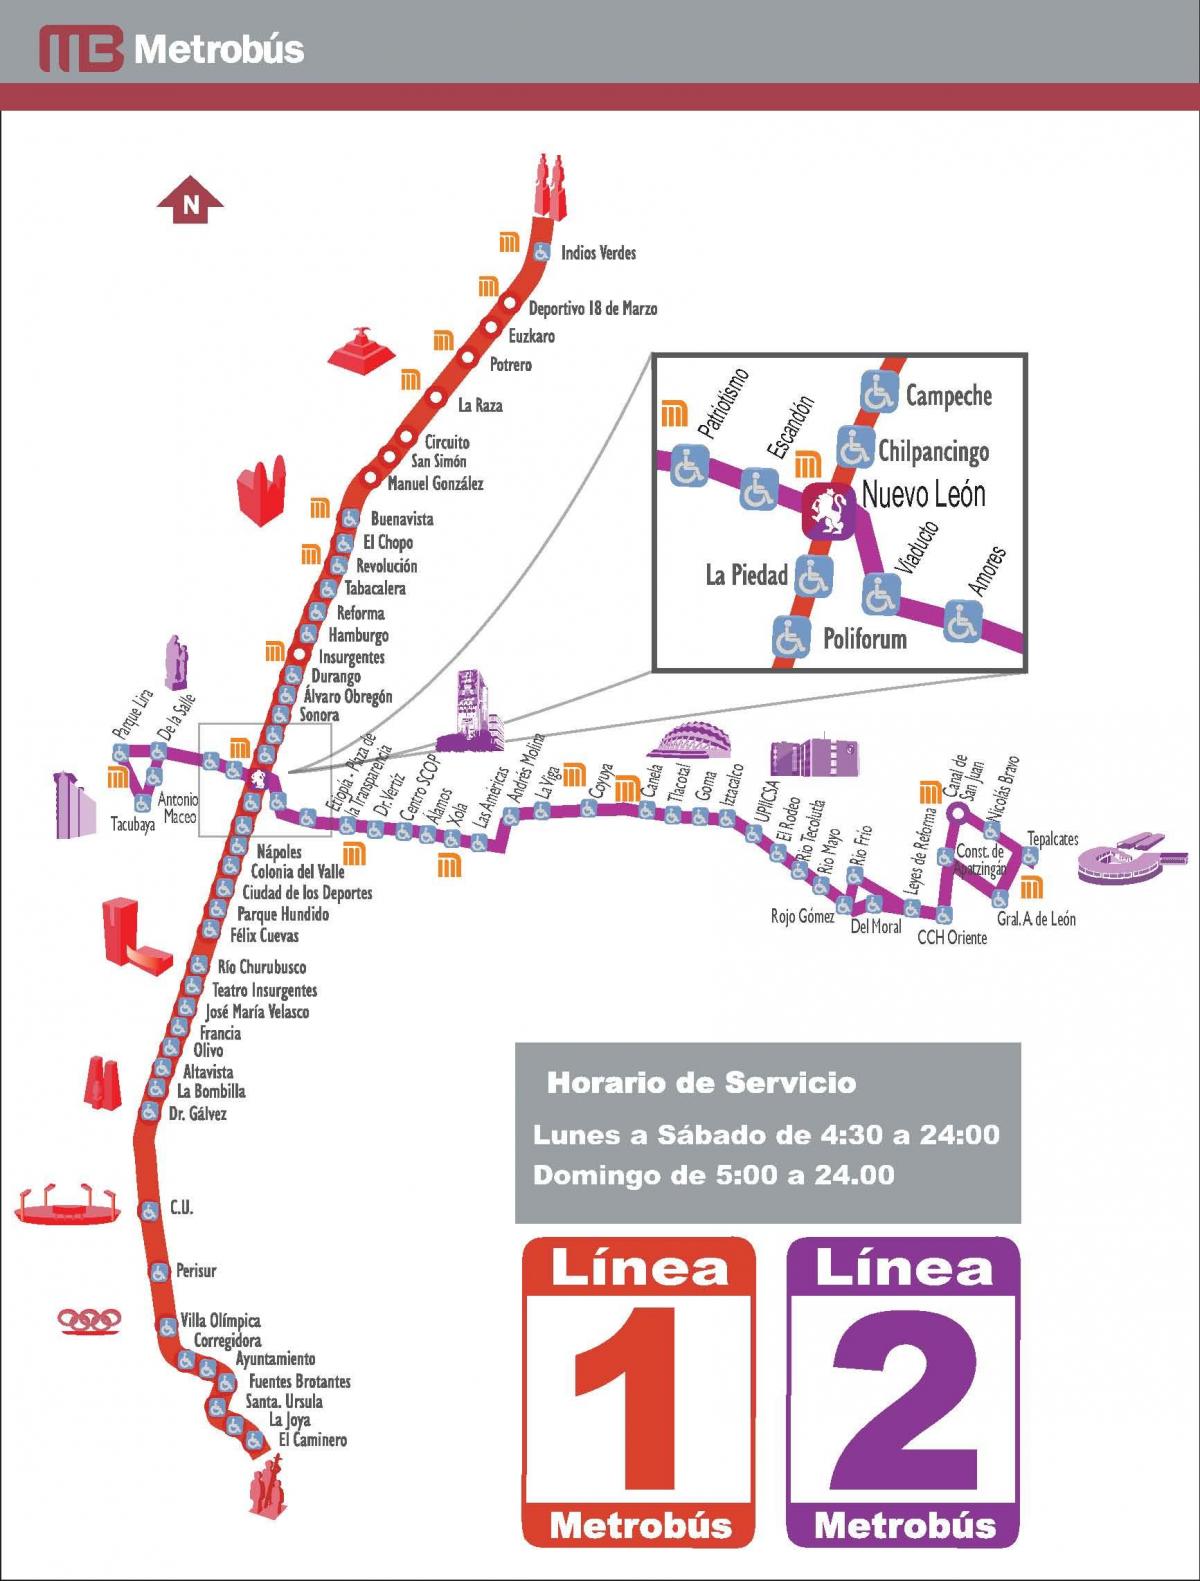 térkép metrobus Mexico City